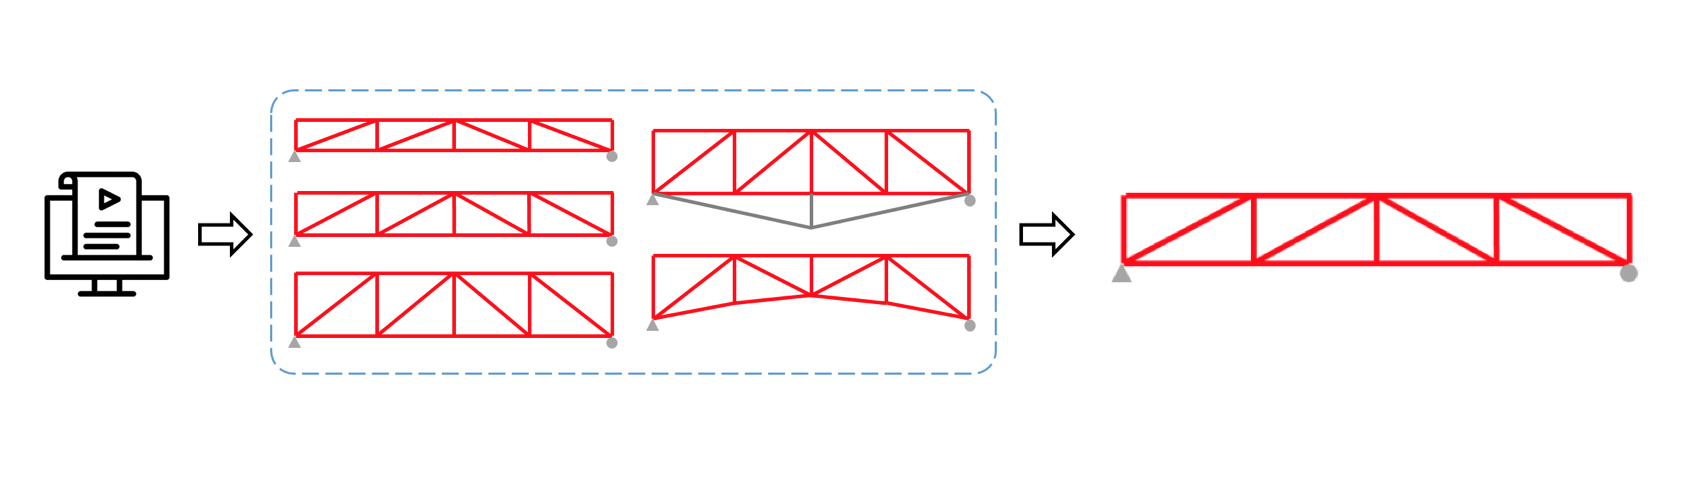 el ingeniero puede crear un script para la generación automática de muchos modelos de puentes con las diferencias indicadas entre ellos y realizar un análisis con el posterior procesamiento automático de los resultados y el diseño de los miembros